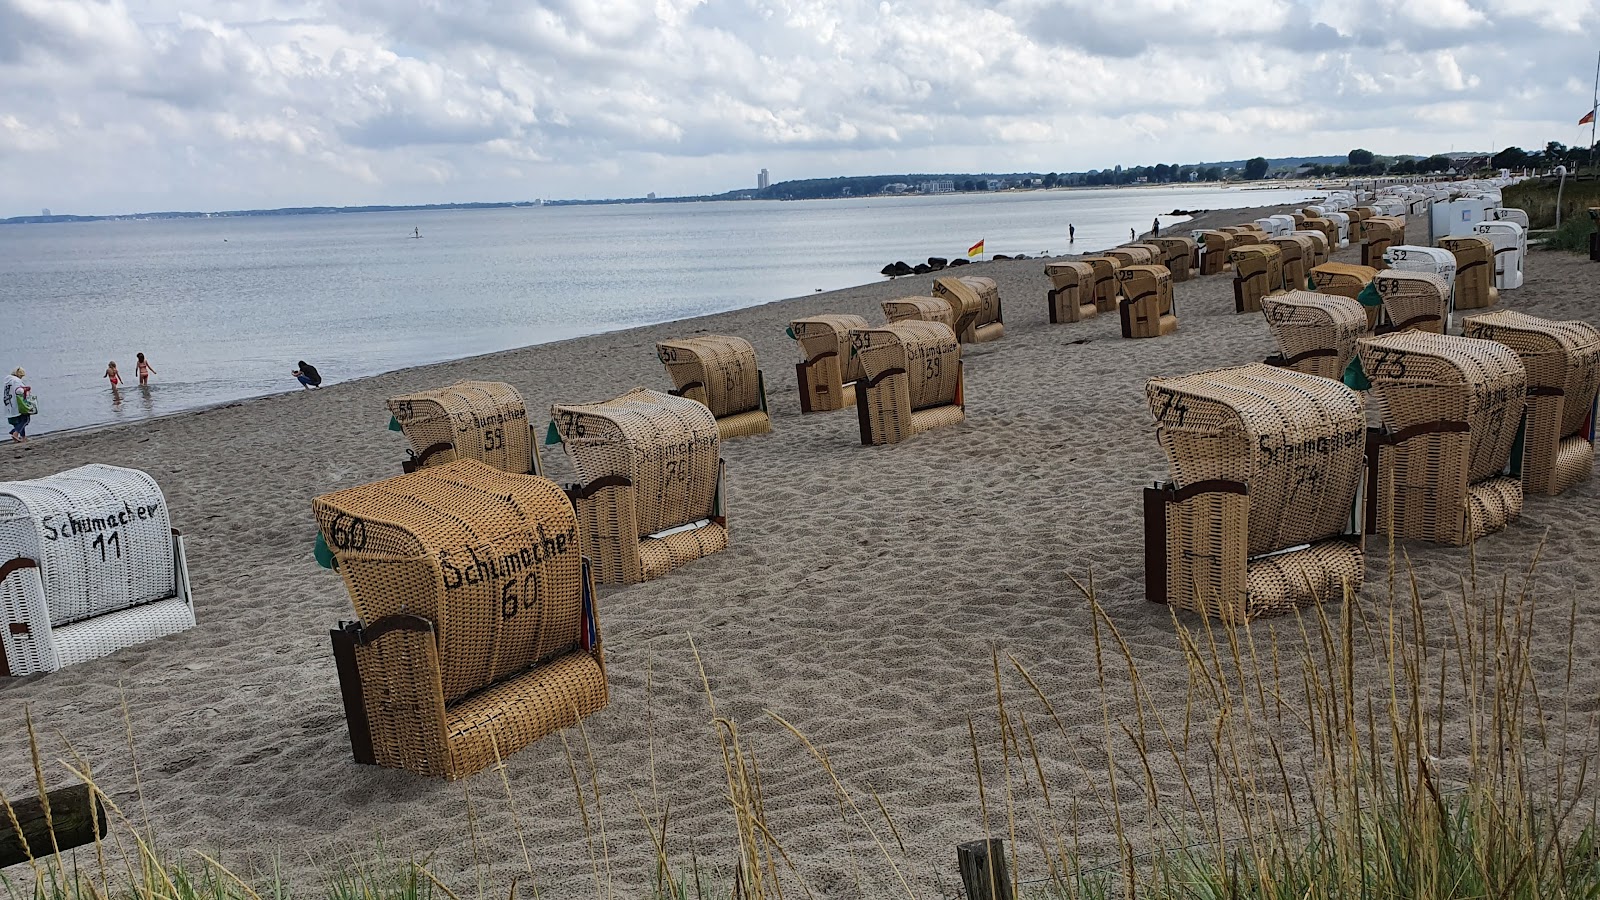 Foto af Haffkrug strand - populært sted blandt afslapningskendere